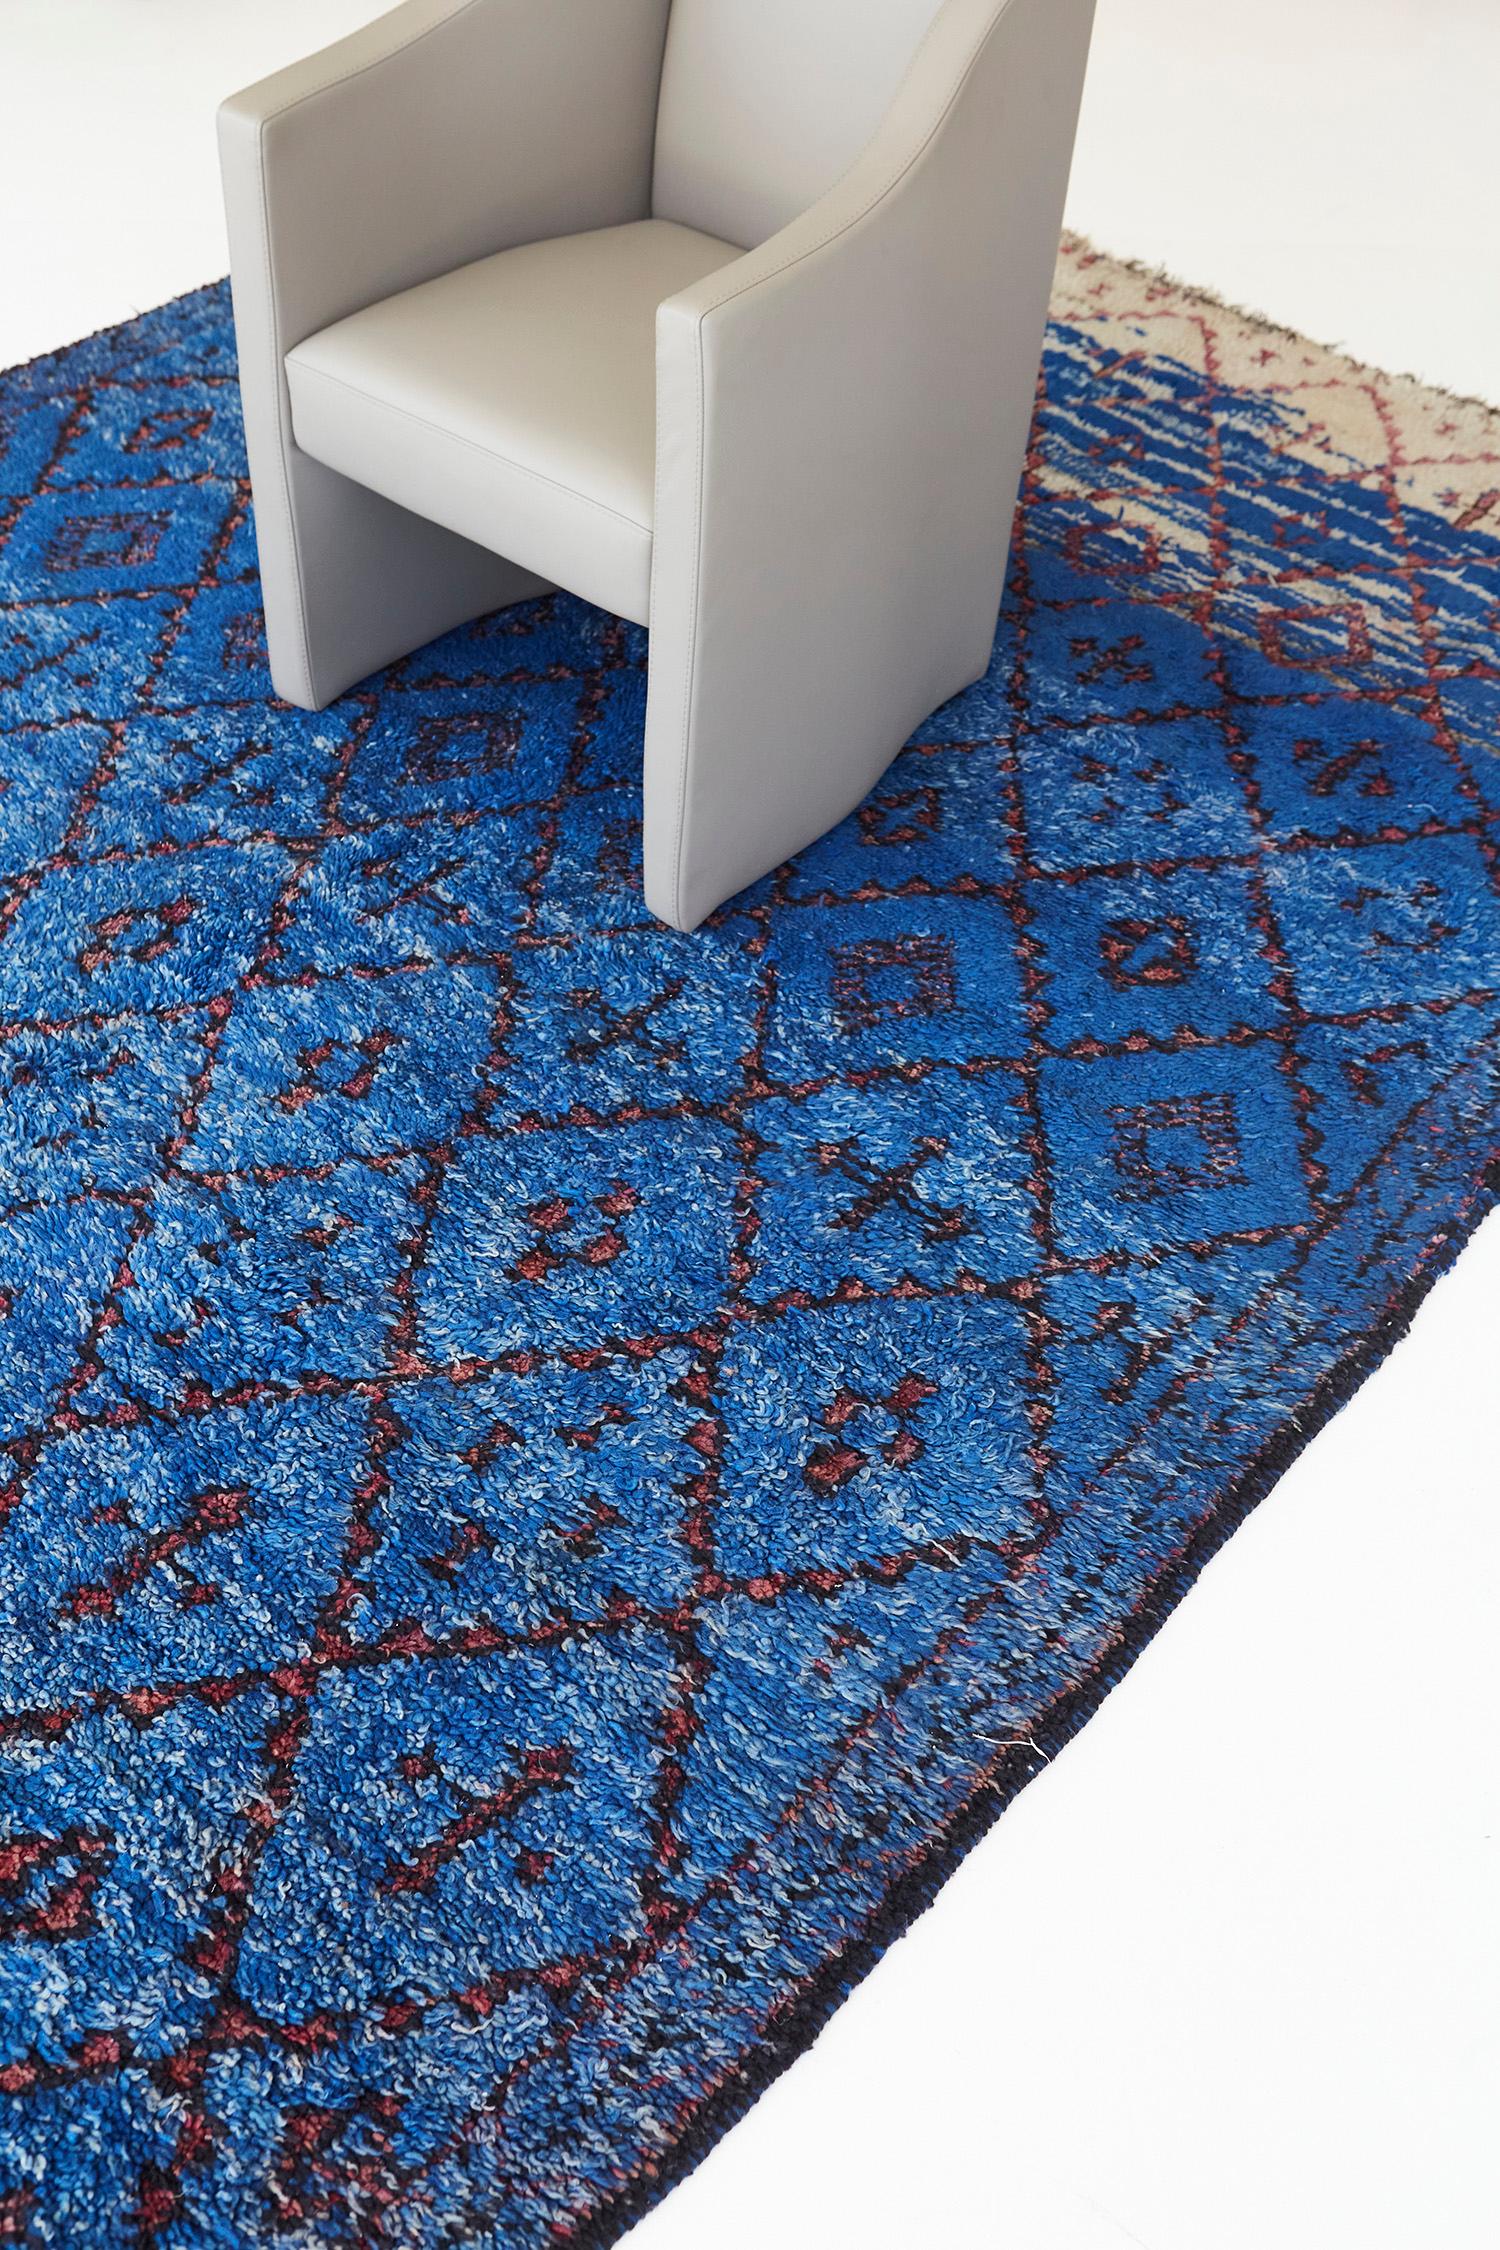 Ein atemberaubender Vintage-Teppich des marokkanischen Beni M'Guild-Stammes mit den leuchtenden Farben Azurblau und Sand. Sie verkörpern diese wunderschönen symbolischen Rautenfelder mit Berber-Elementen, die sich entlang des gescheuerten Feldes